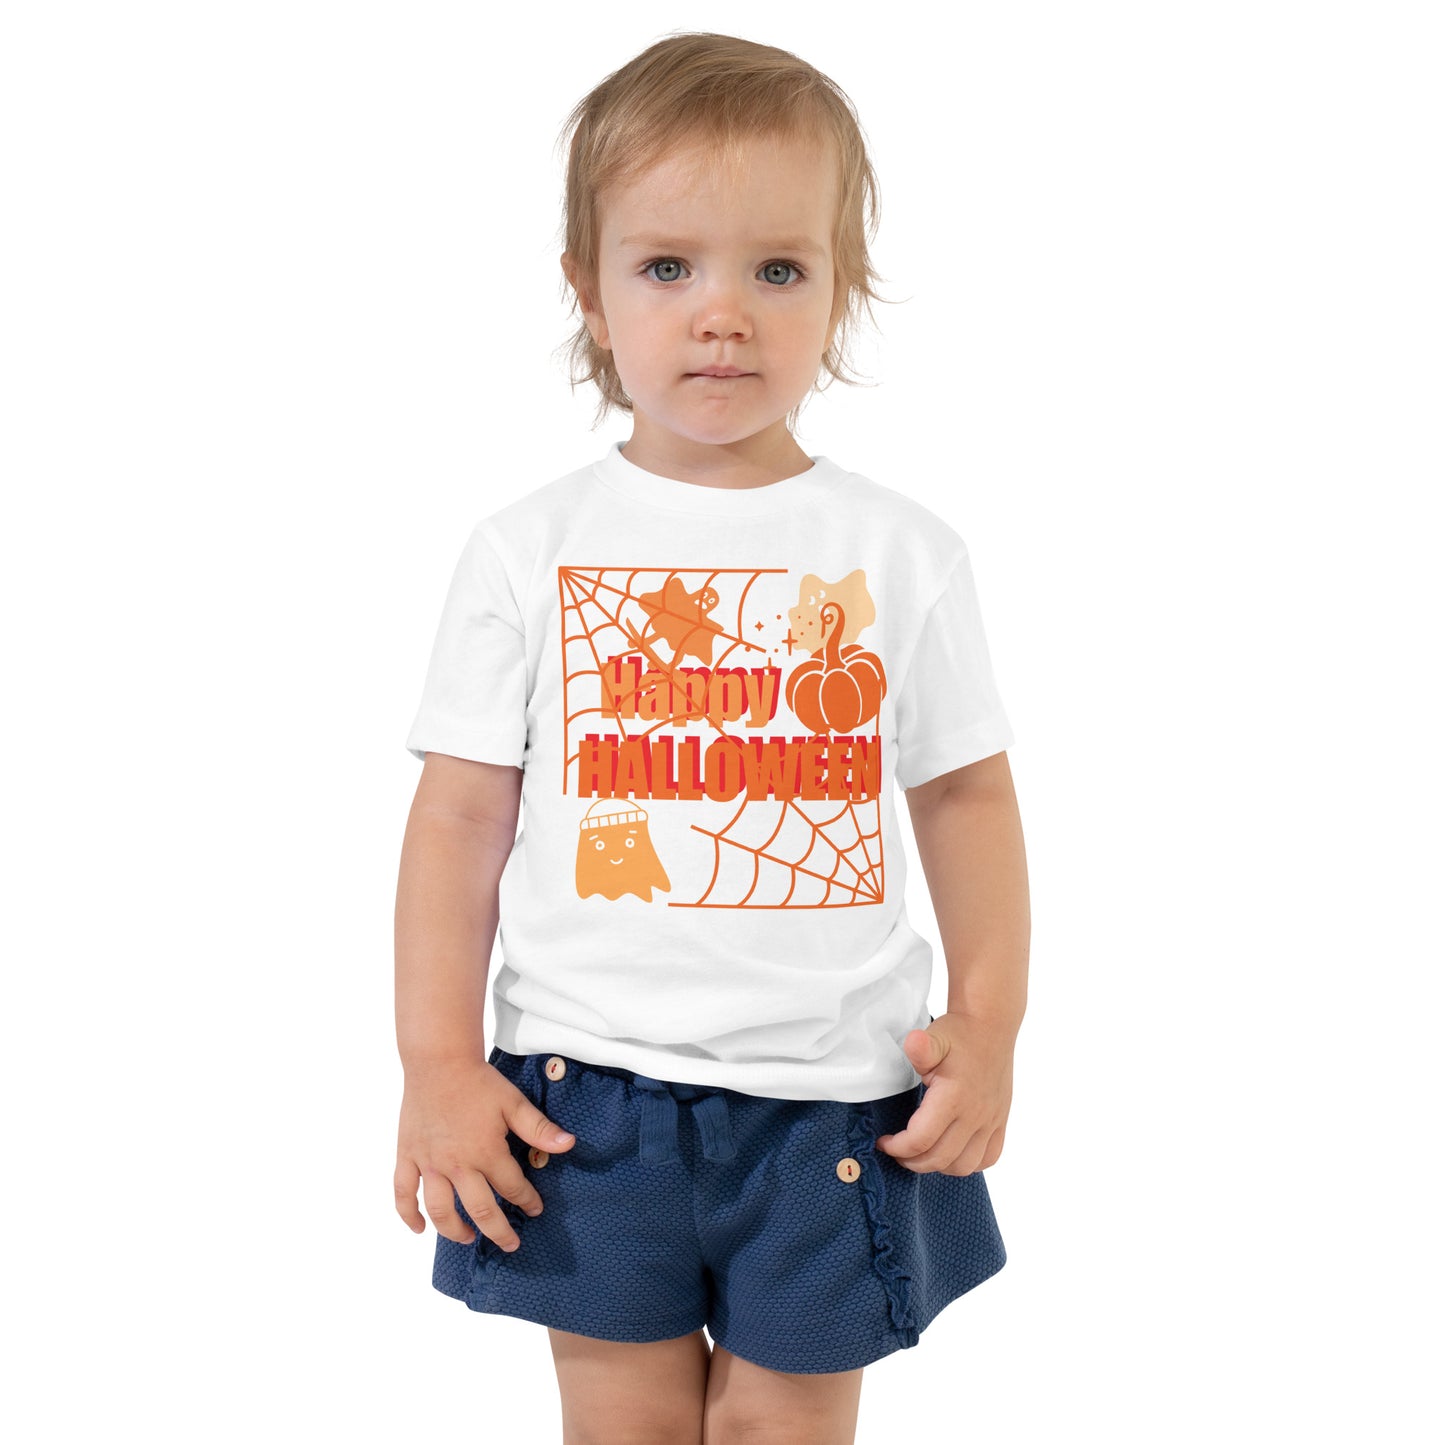 Toddler Halloween T-shirt